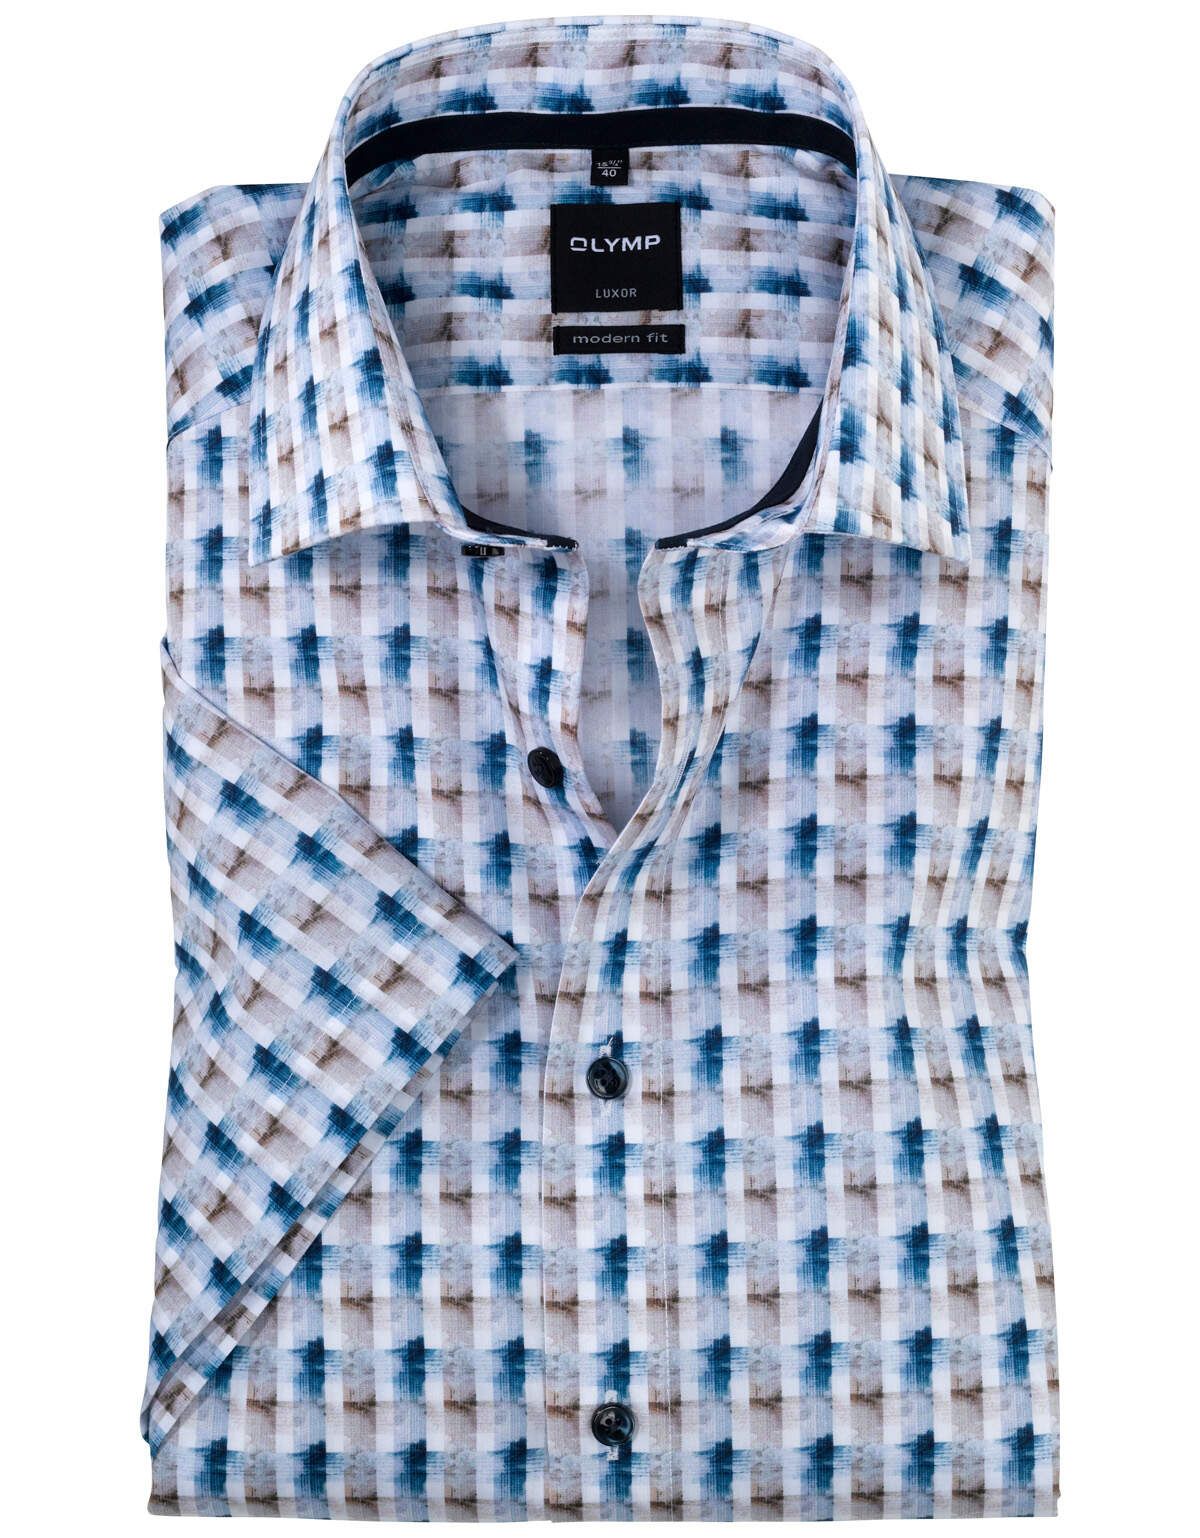 Рубашка мужская OLYMP Luxor, modern fit[БЕЖЕВЫЙ]